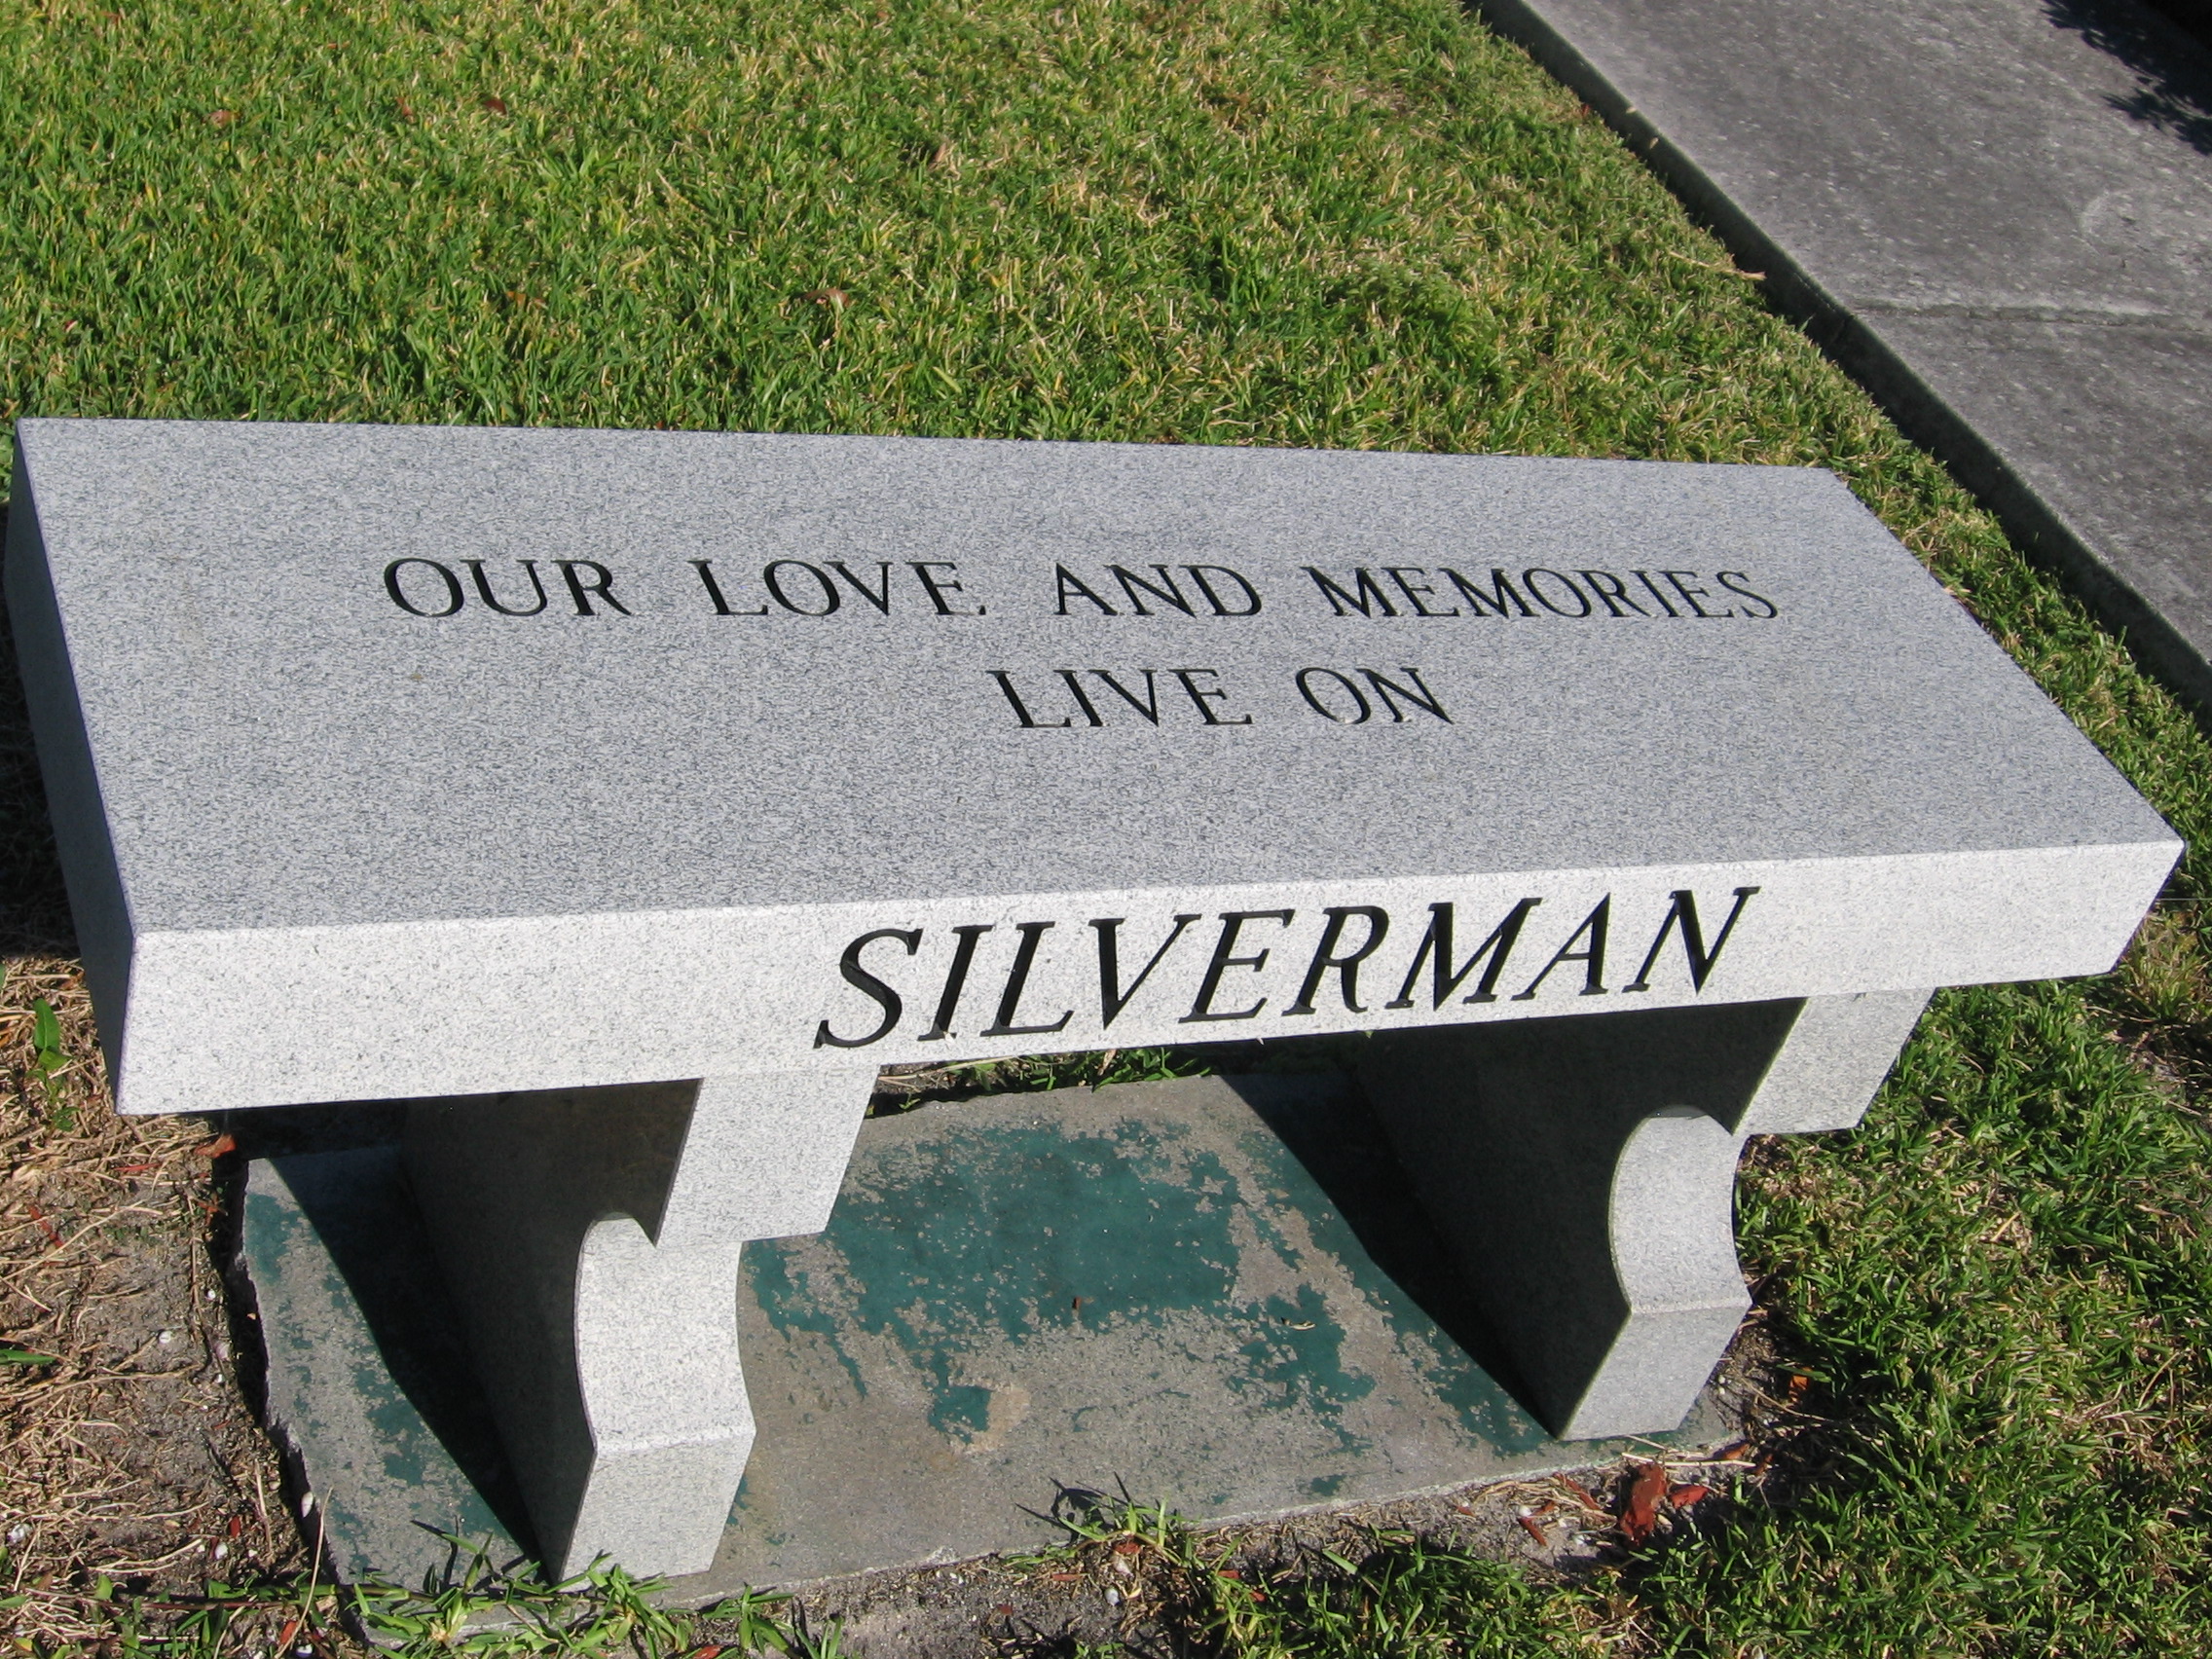 Lewis D Silverman